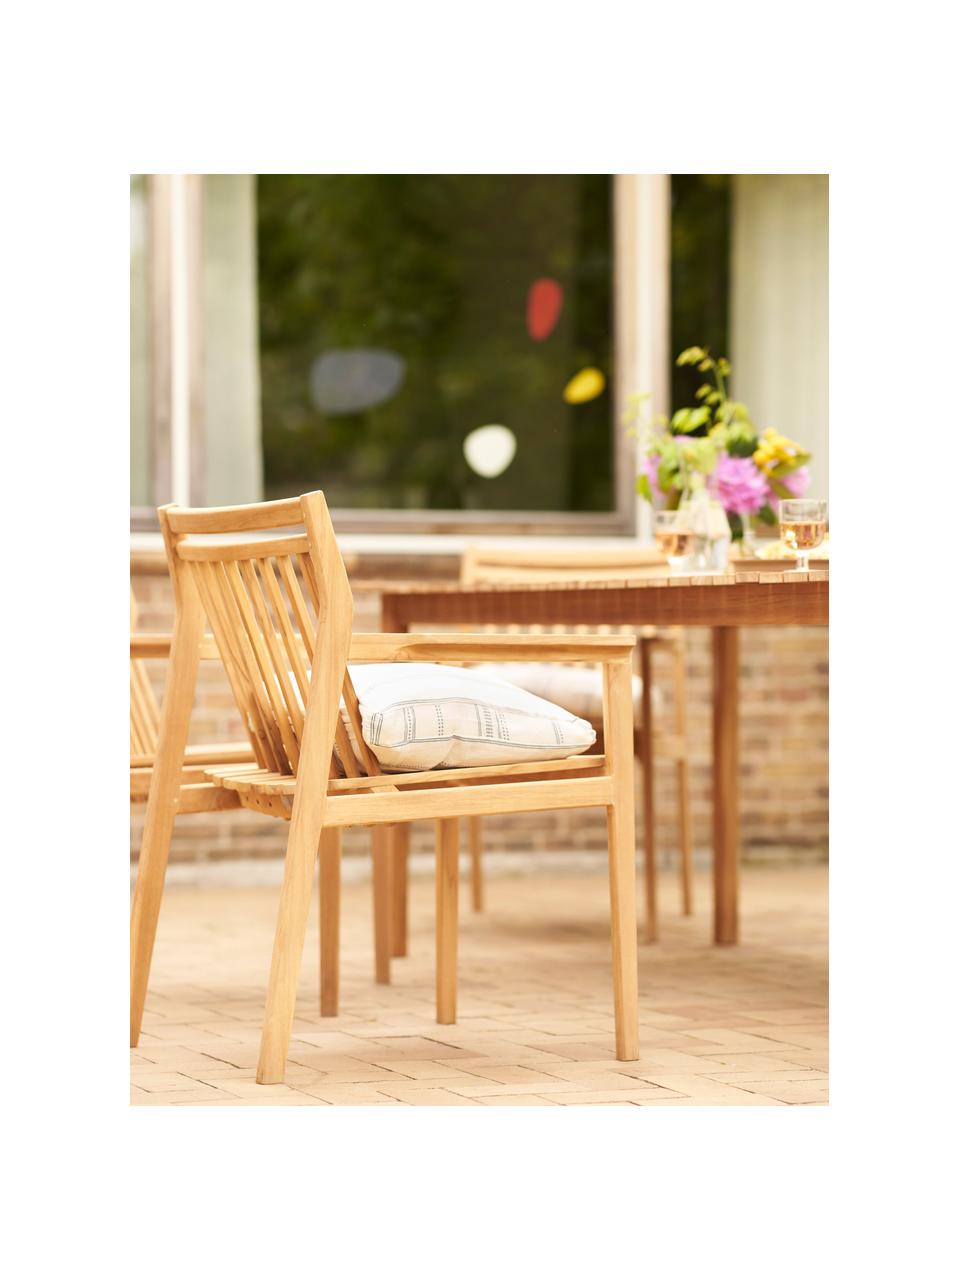 Chaise de jardin en teck Sammen, Bois de teck

Ce produit est fabriqué à partir de bois certifié FSC® issu d'une exploitation durable, Teck, larg. 63 x haut. 60 cm